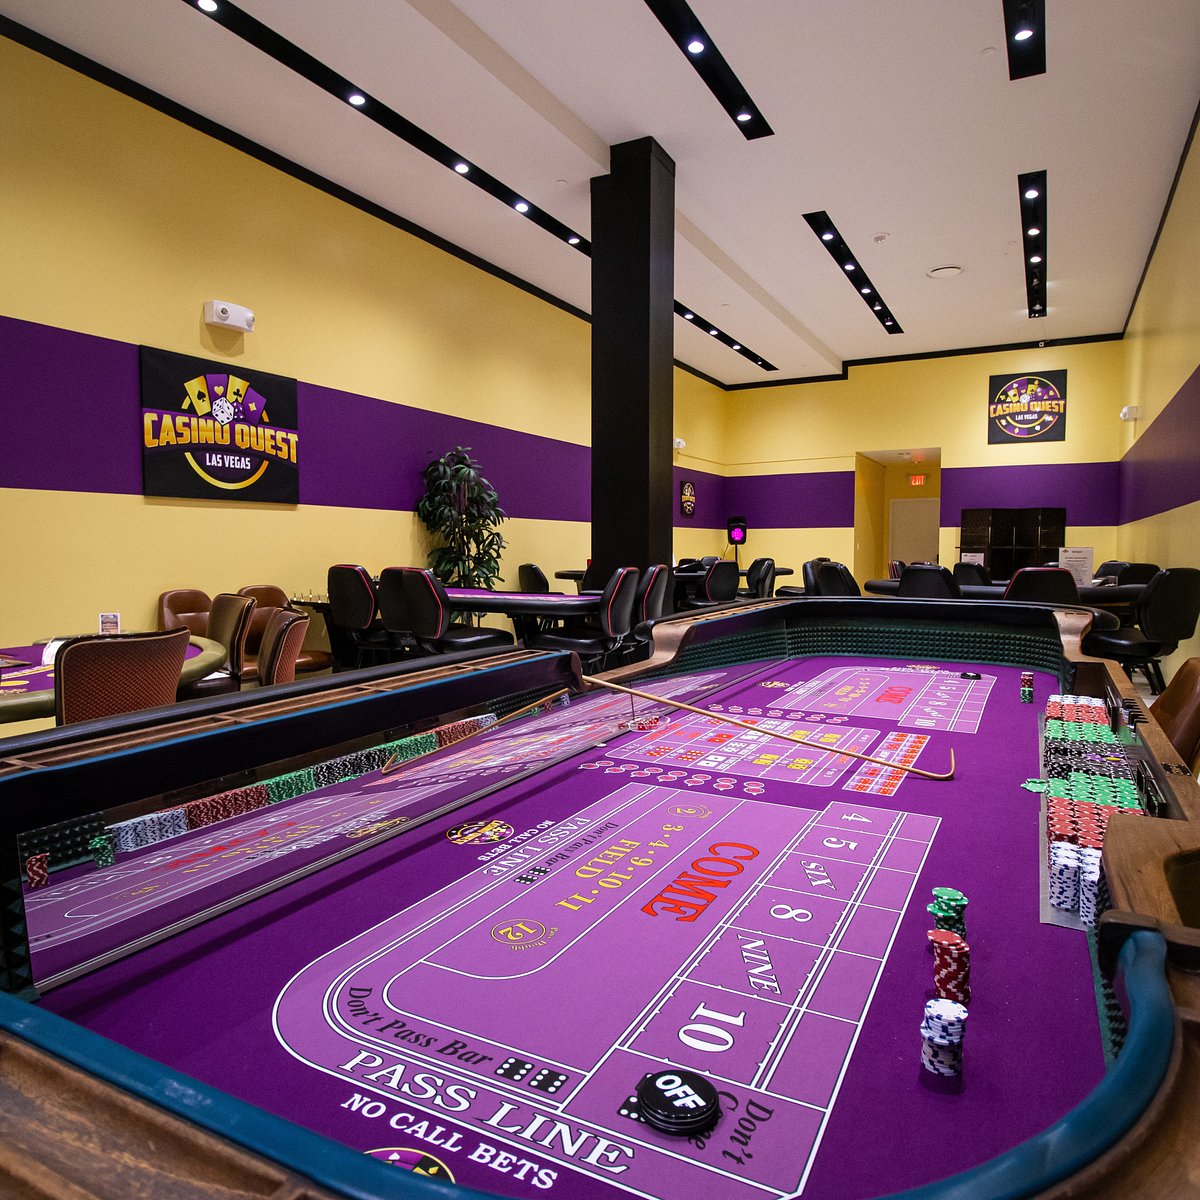 Casino floor - Picture of ARIA Resort & Casino, Las Vegas - Tripadvisor